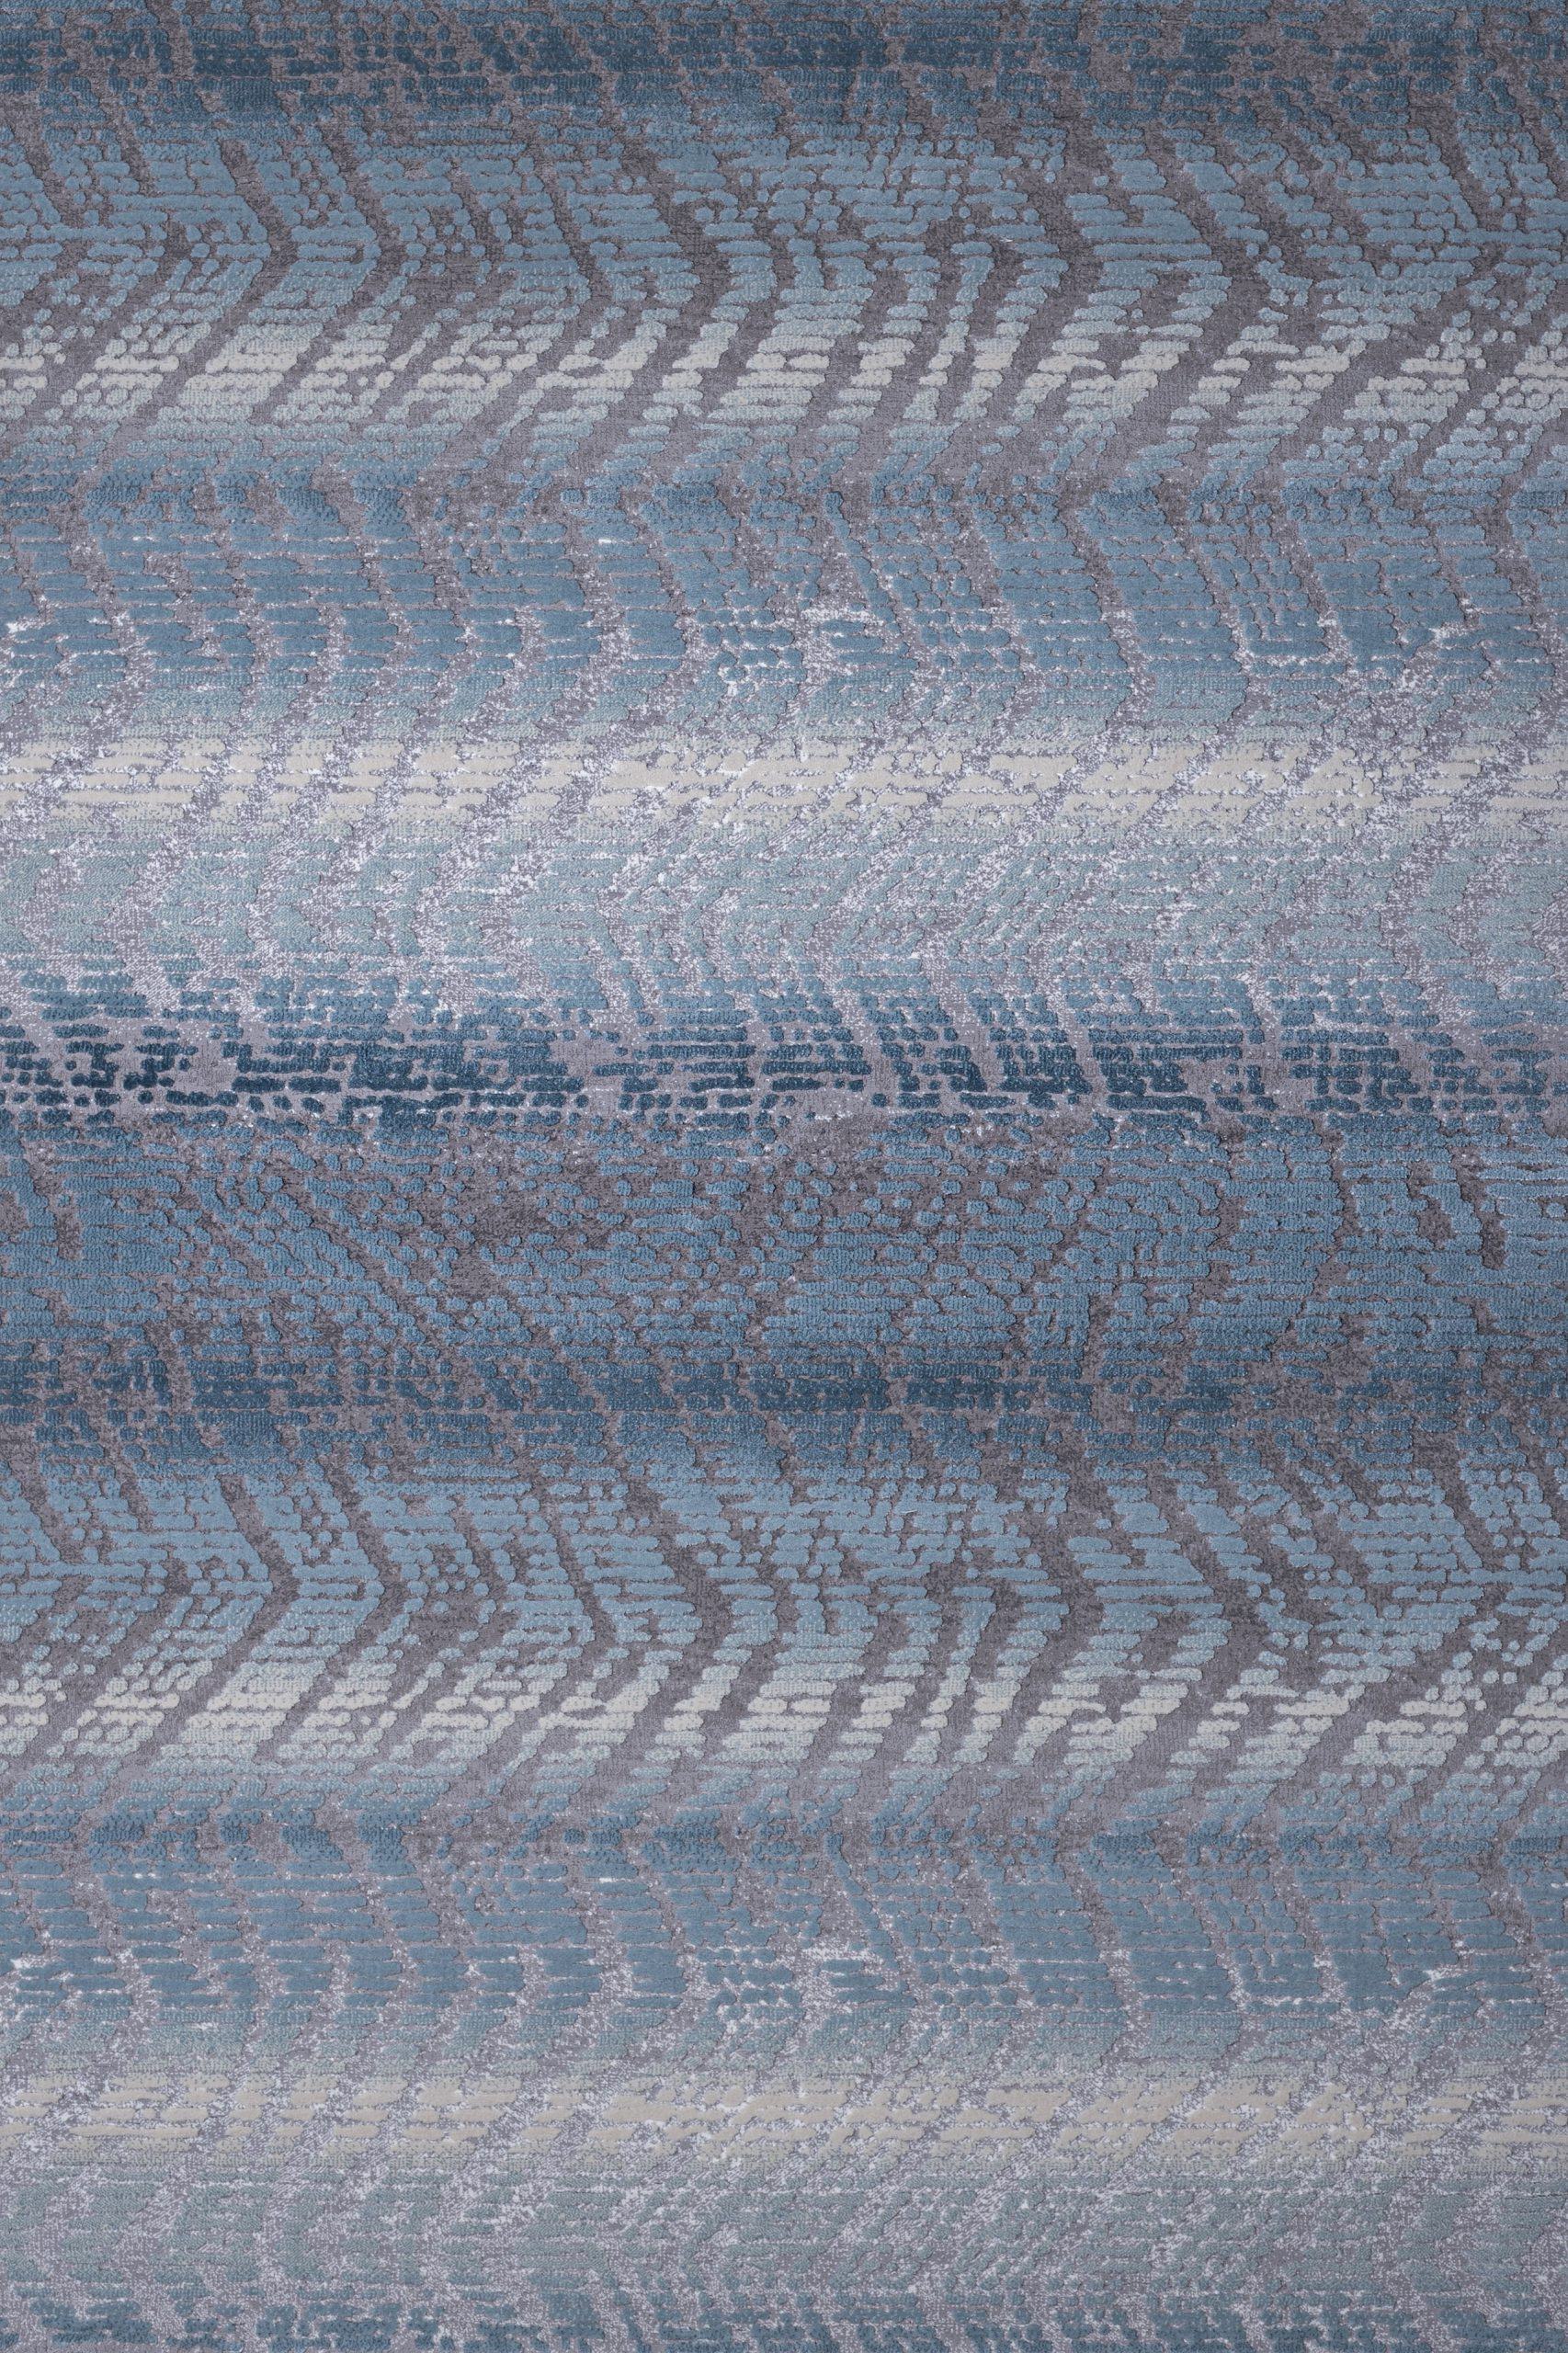 Χαλί μοντέρνο ψηφιδωτό γκρι γαλάζιο Thema 4660/933 - 2,50x3,50 Colore Colori